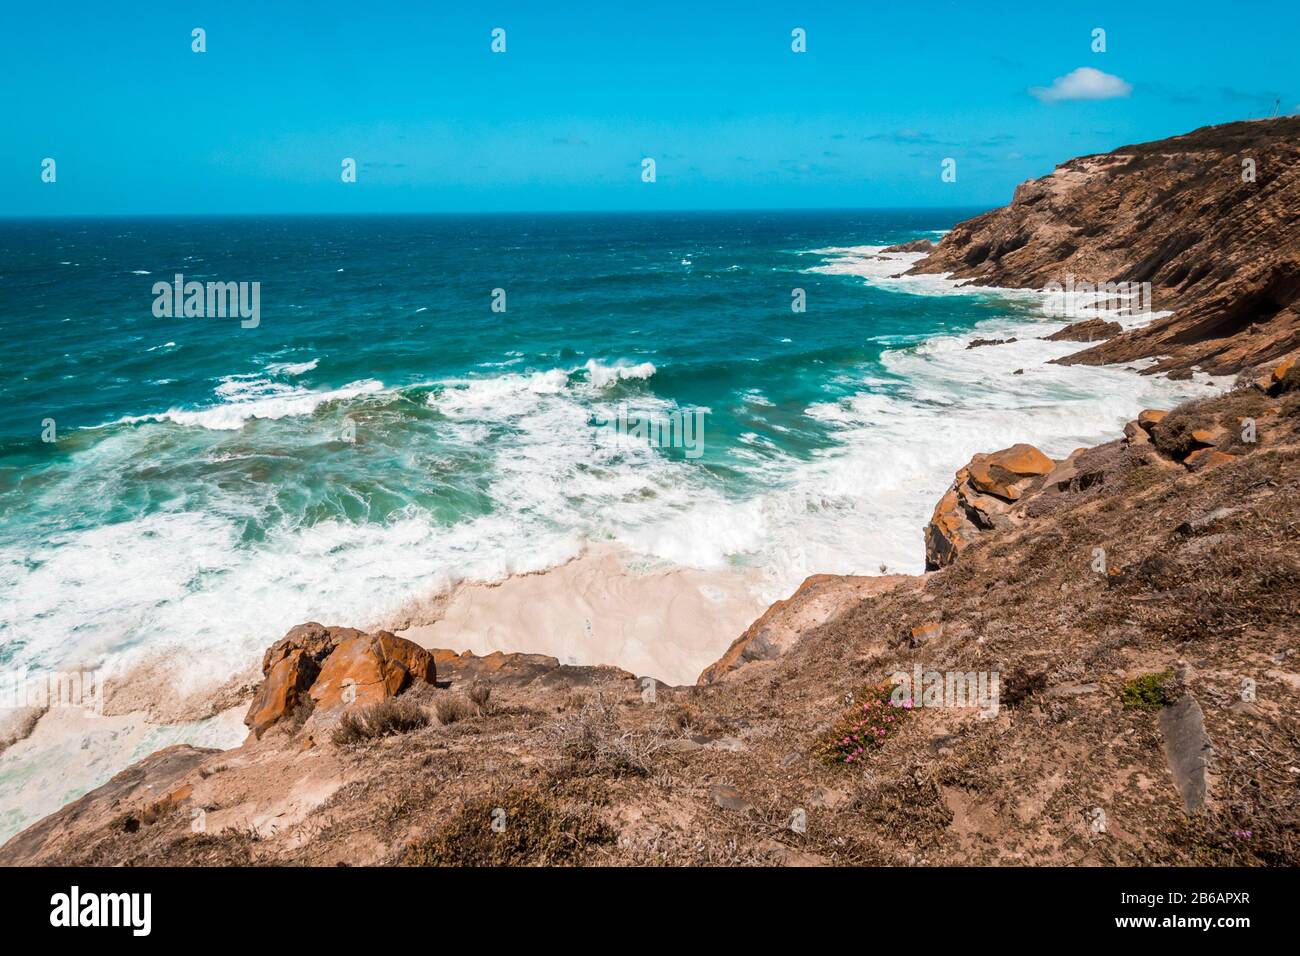 Der indische Ozean und die Wellen, die am Ufer in der Nähe von Kap Agulhas, dem südlichsten Punkt Afrikas, brechen. Garden Route, Souther Africa Stockfoto